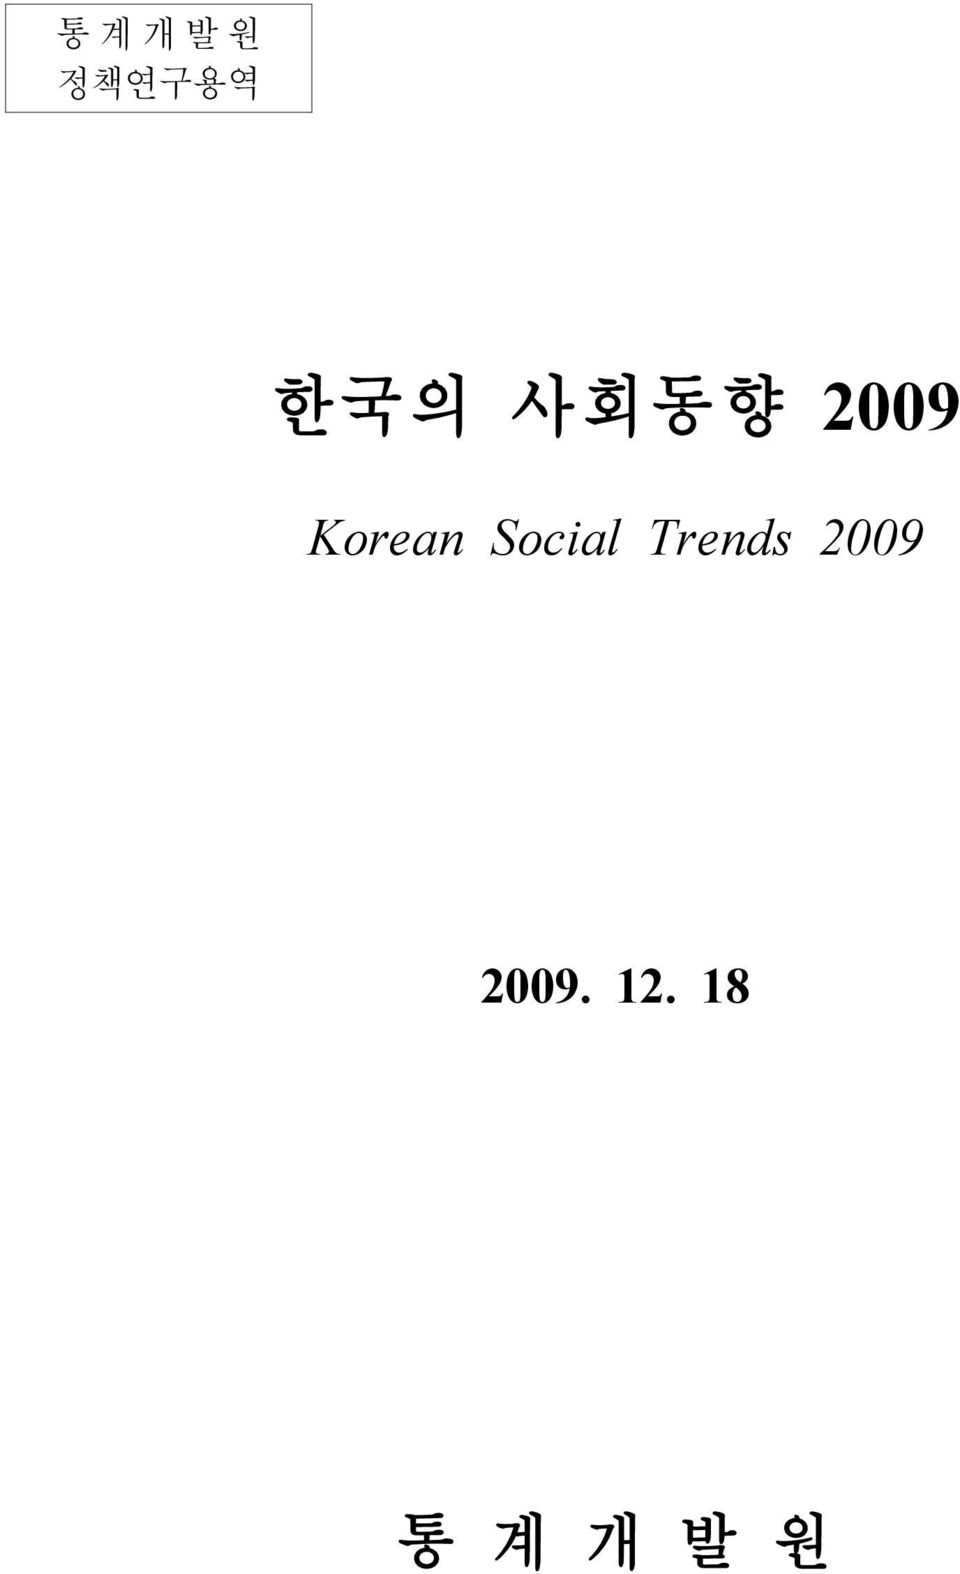 Korean Social